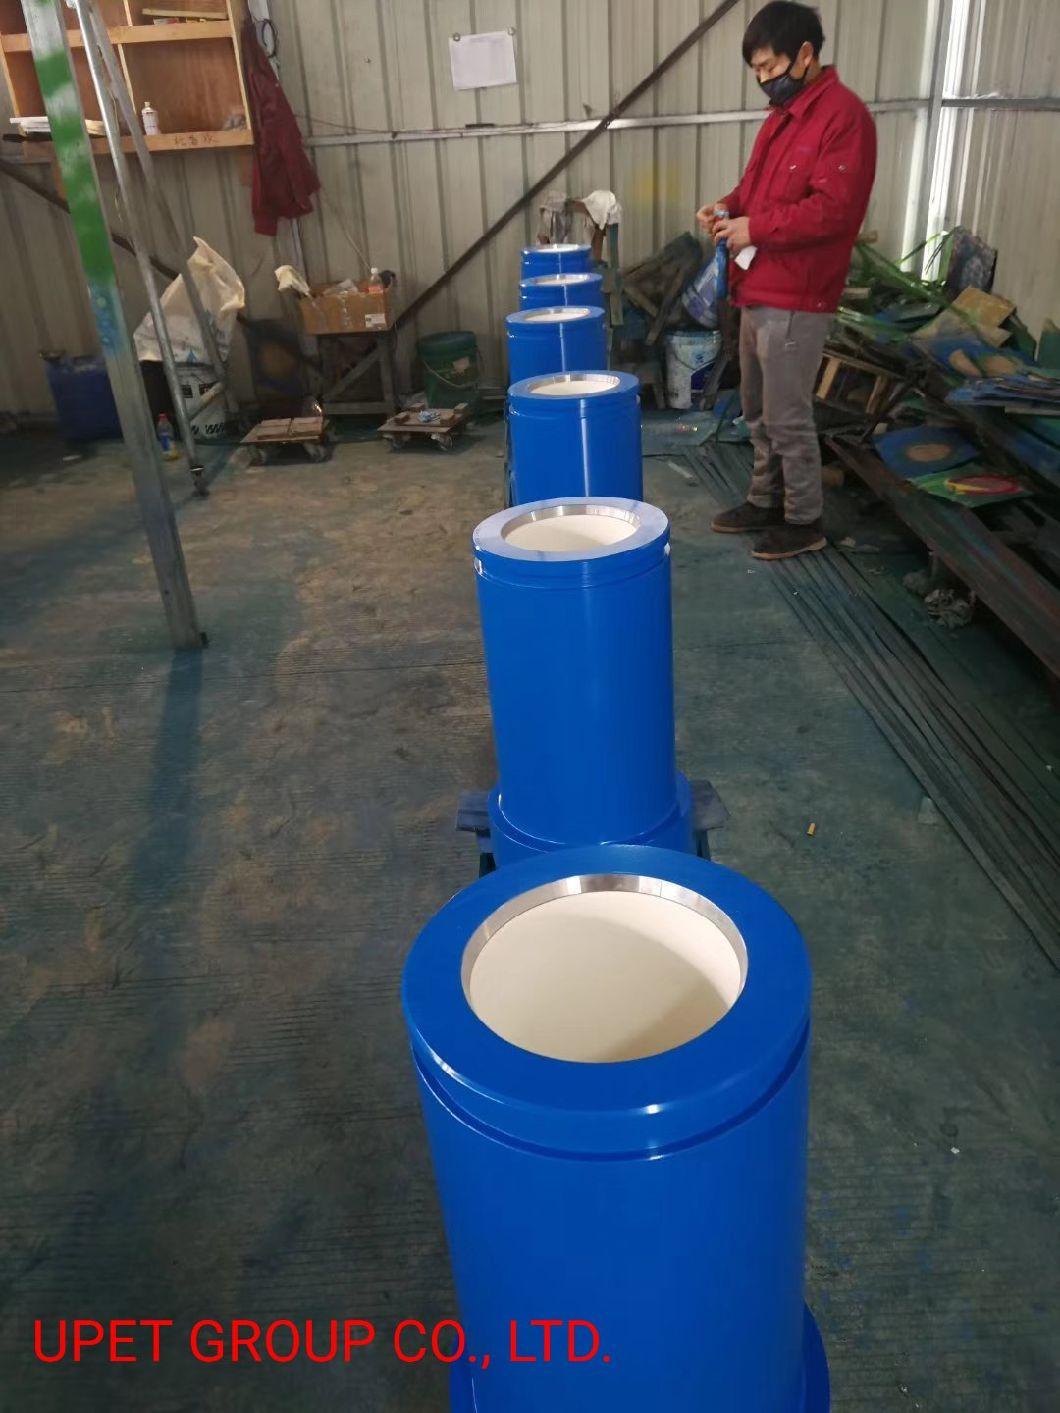 Oil Drilling Mud Pump Parts Ceramic Liner F-1000, F-1600, 14p-220, 12p-160, T-1300, Pz-8, Pz-9etc